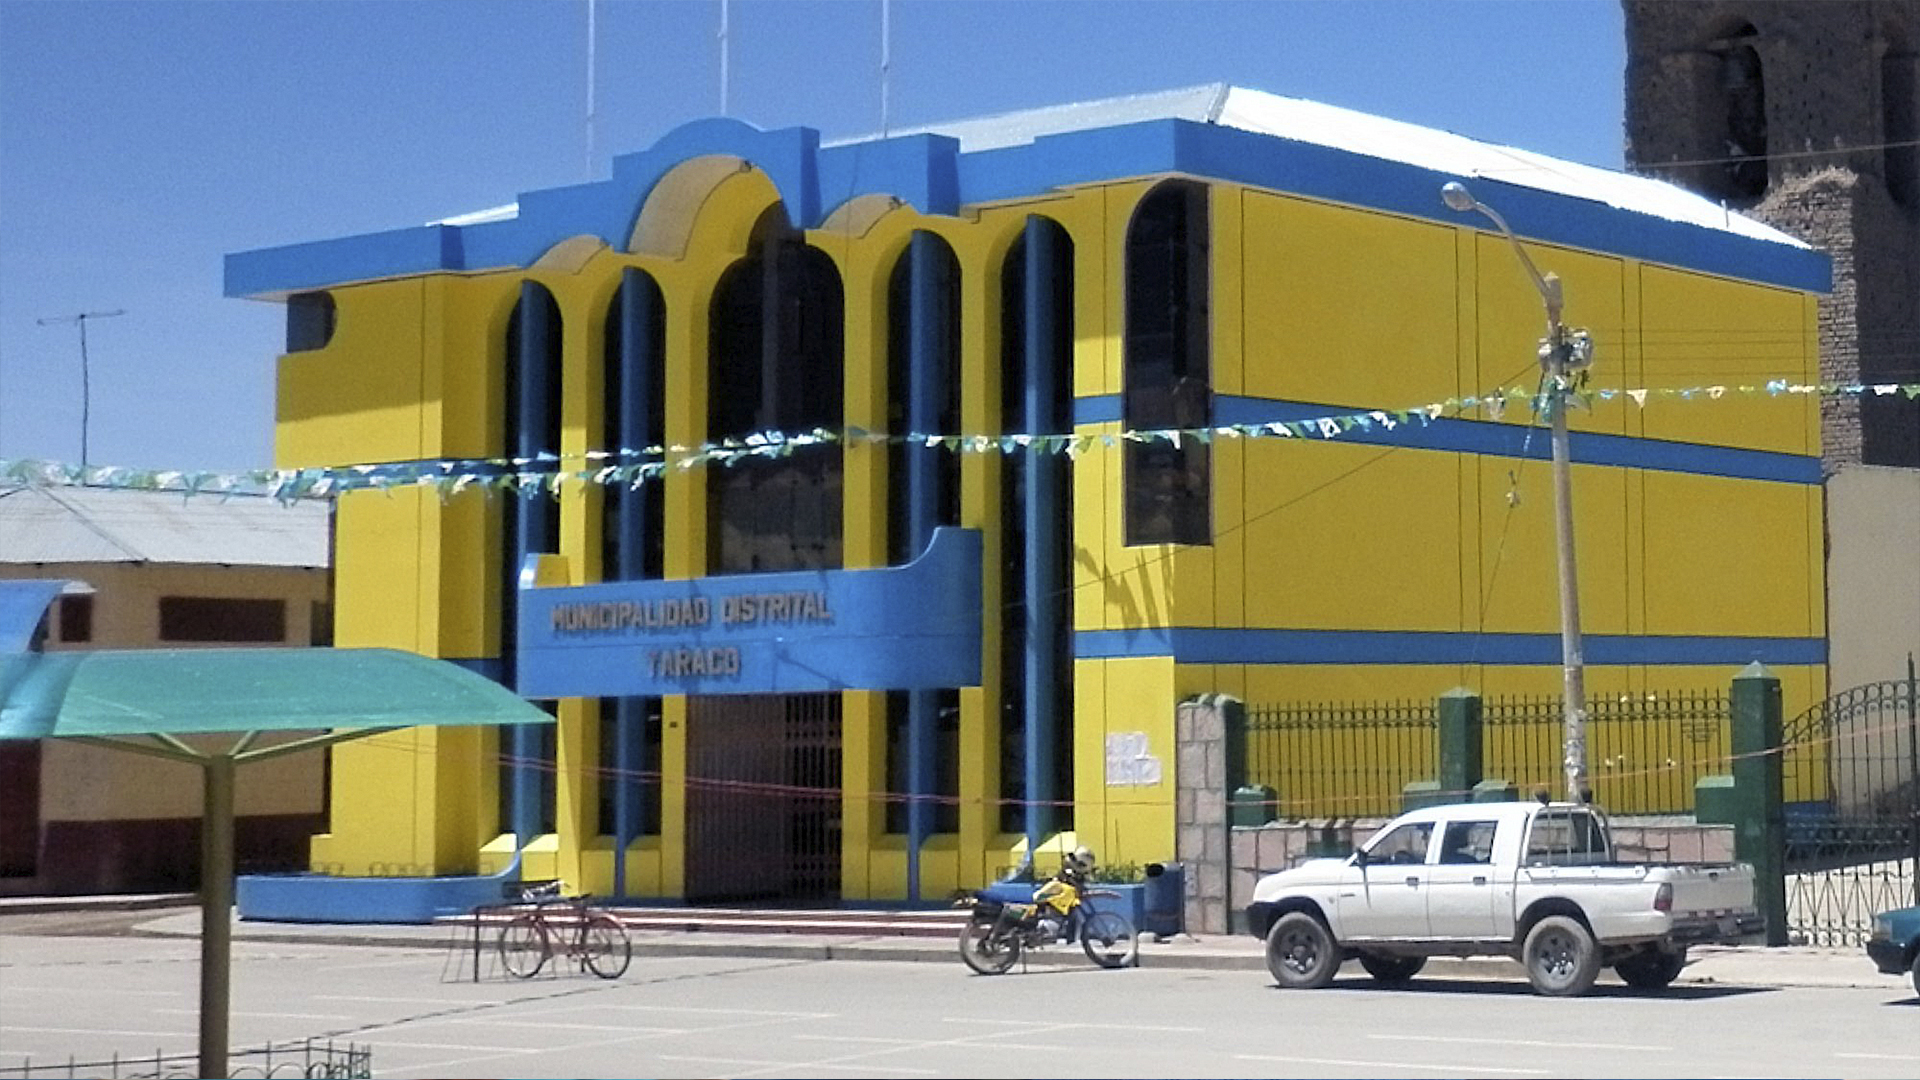 Municipalidad Distrital de Taraco